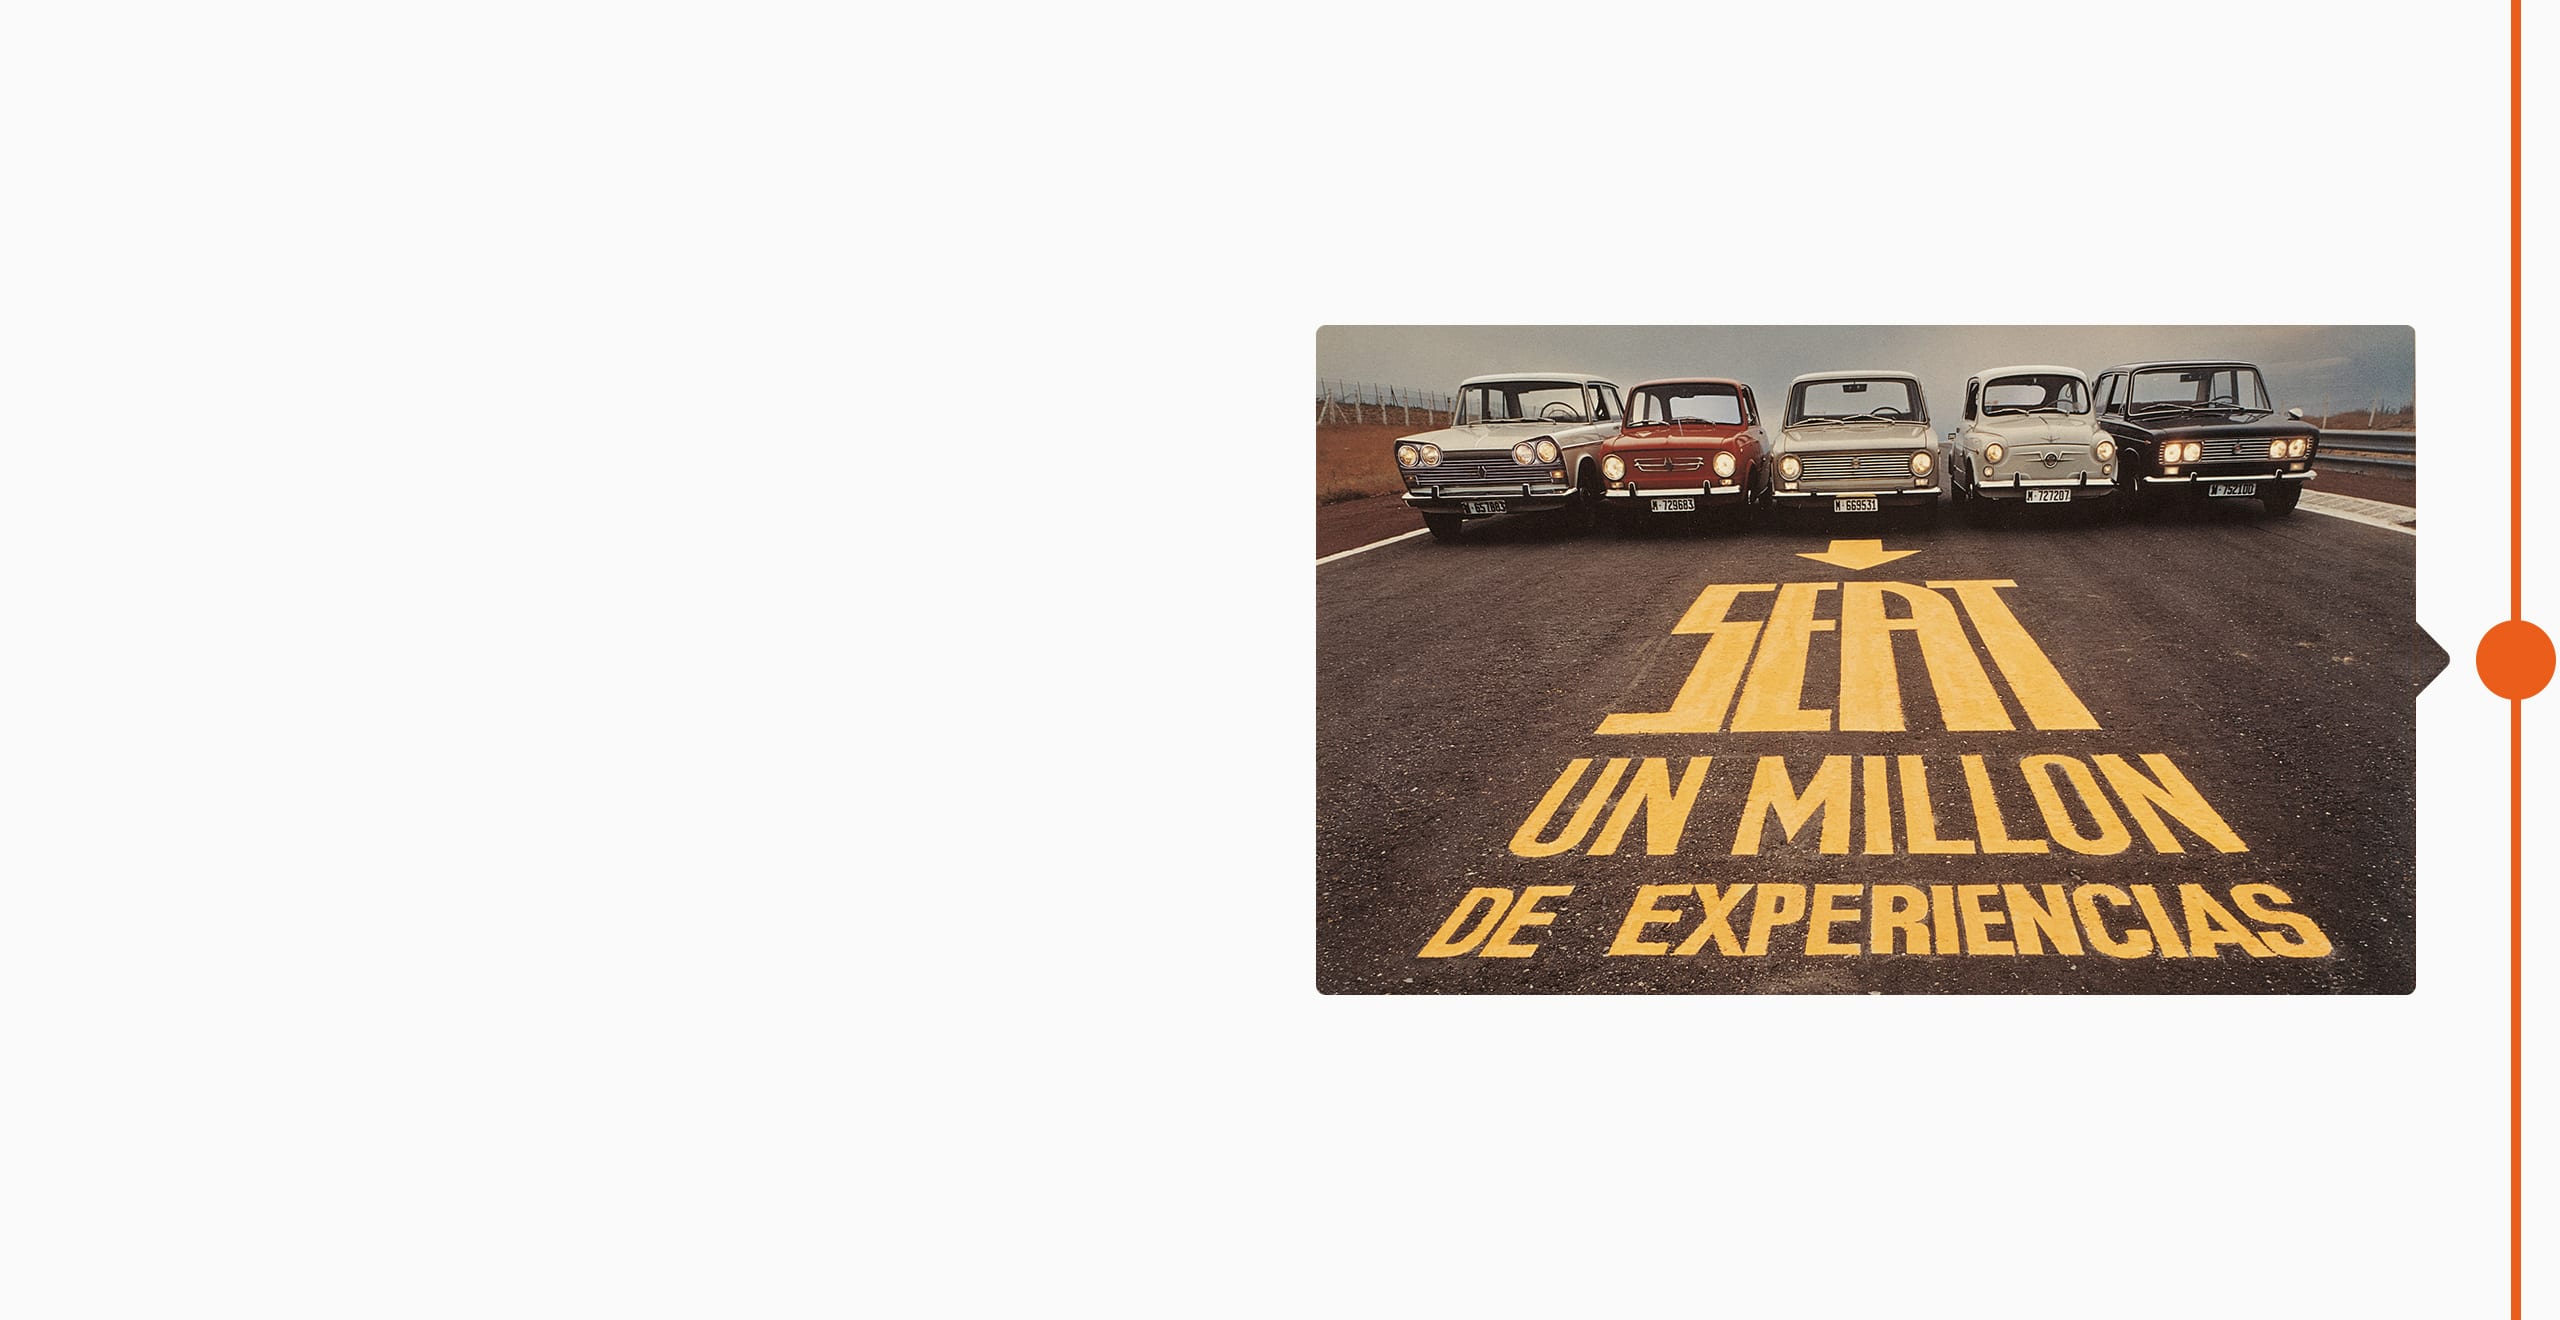 SEAT varumärke historia 1974 - fem klassiska bilar uppradade en million av erfarenhet